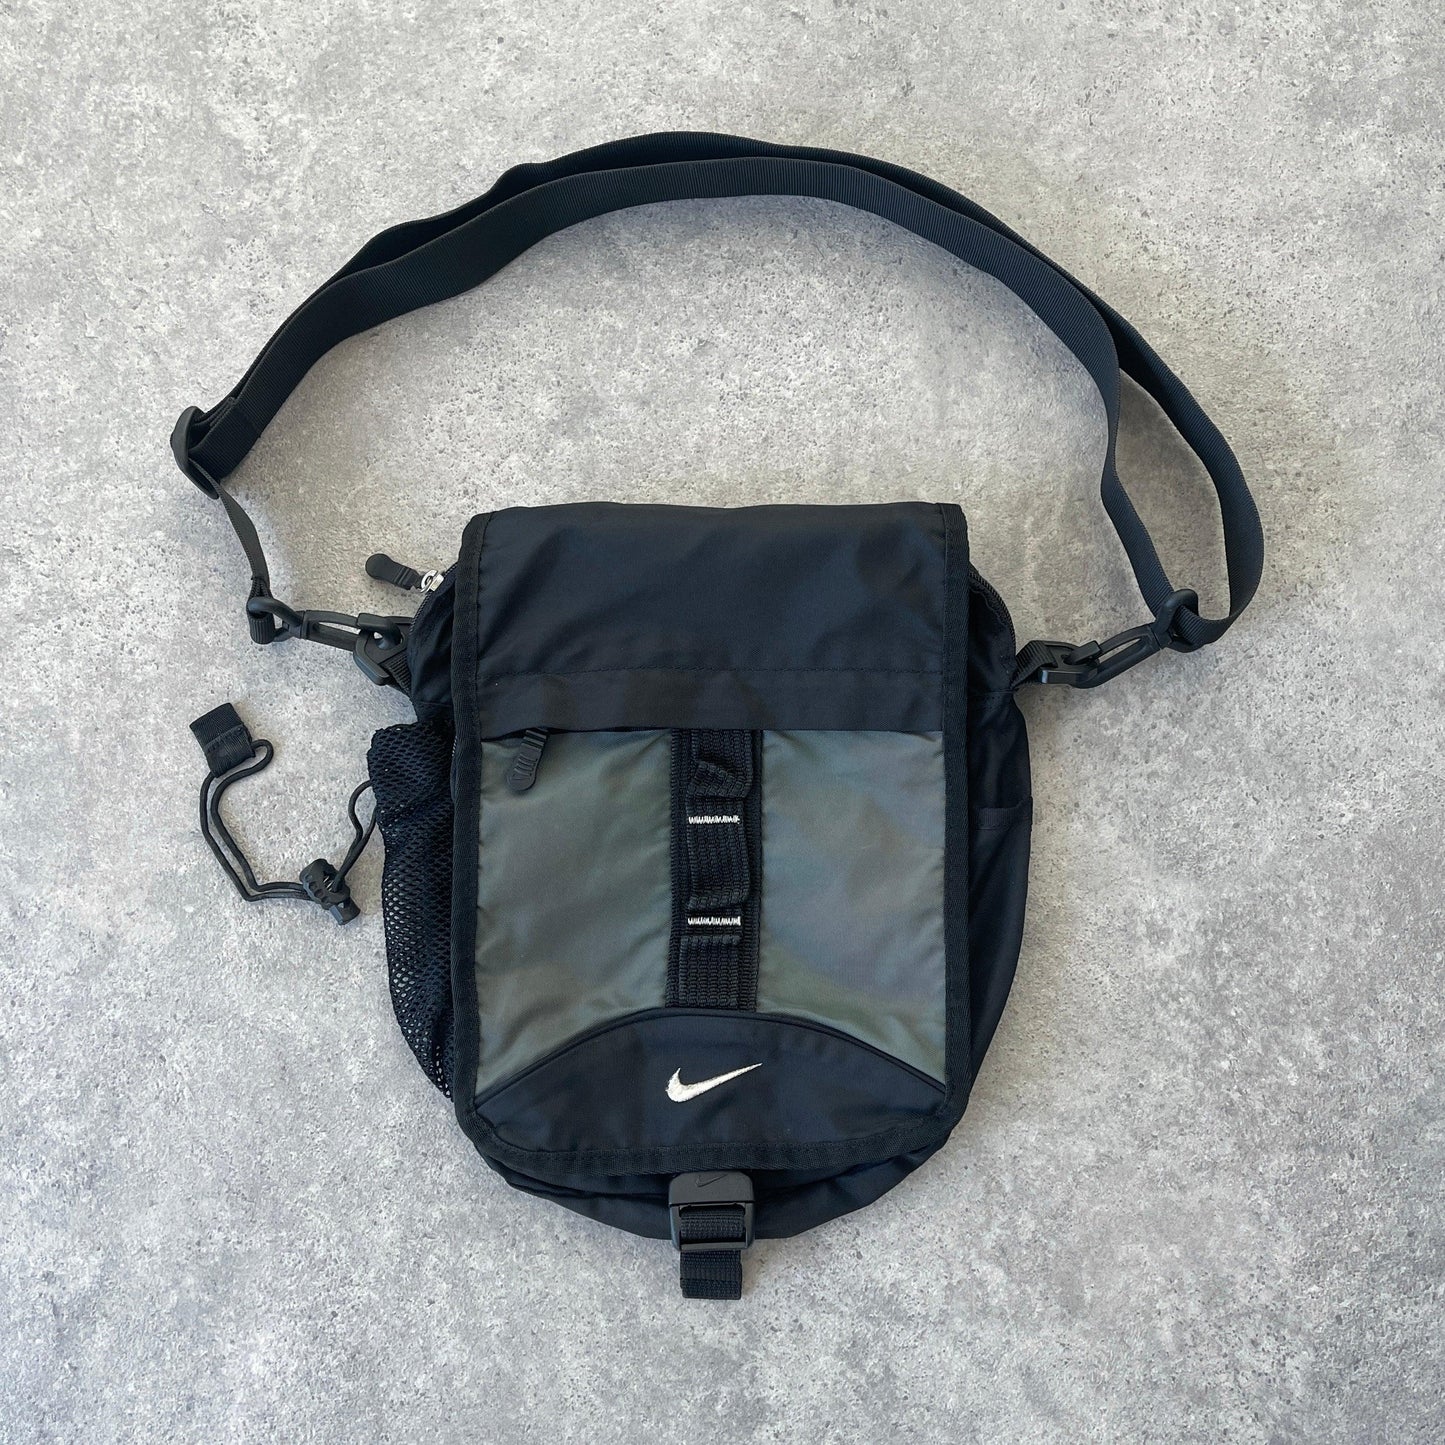 Nike 1990s cross body utility bag (11”x10”x5”) - Known Source